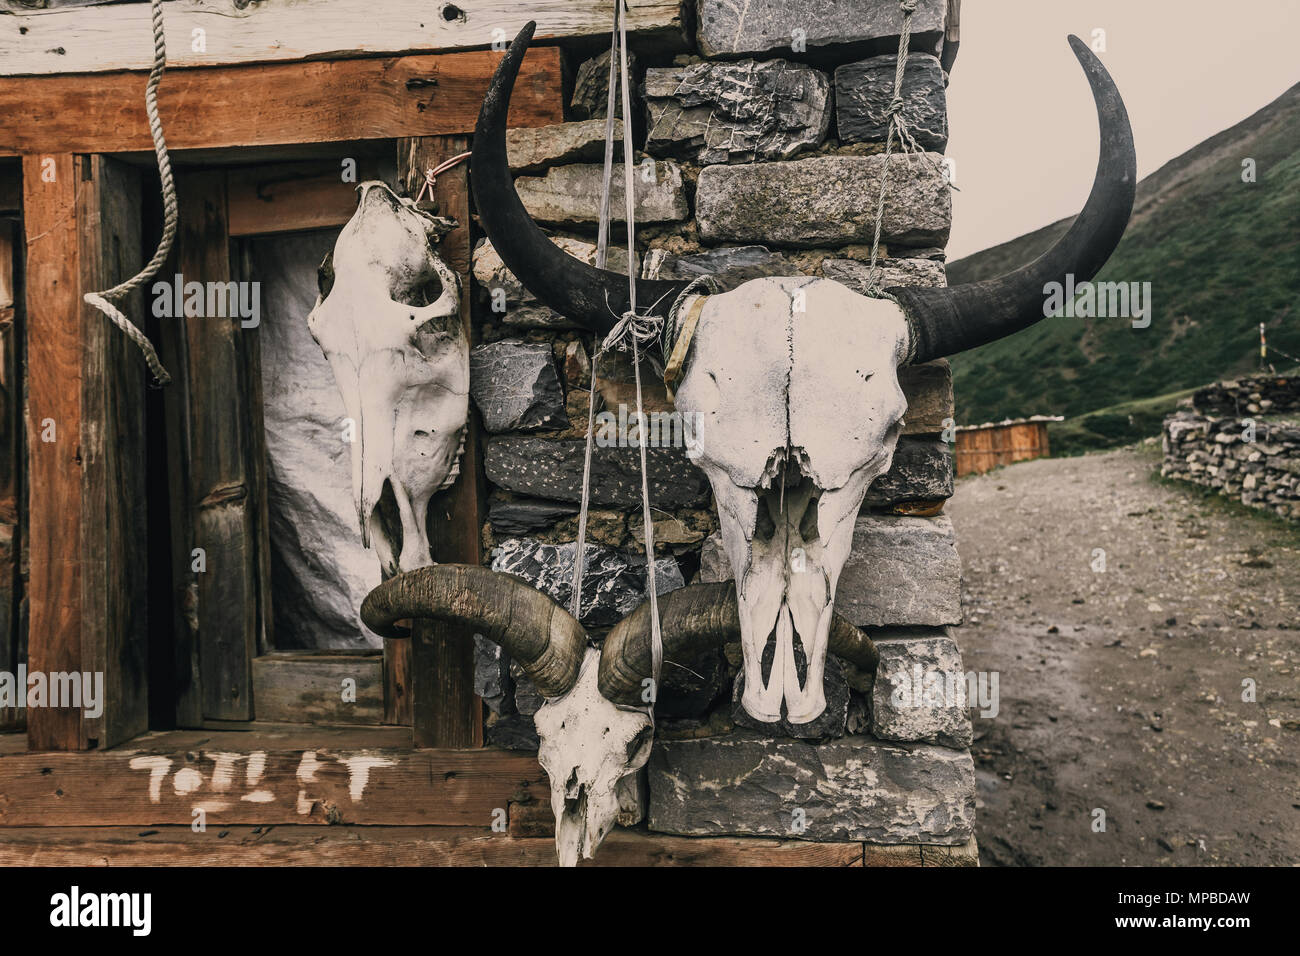 Die großen Schädel von Wilden gehörnten Tiere Auflegen der Steinmauer von Hunter Hütte. Perfekter Hintergrund für die verschiedenen Collagen und Illustrationen im Gotischen, geheimnisvoll, märchenhaften Stil. Stockfoto